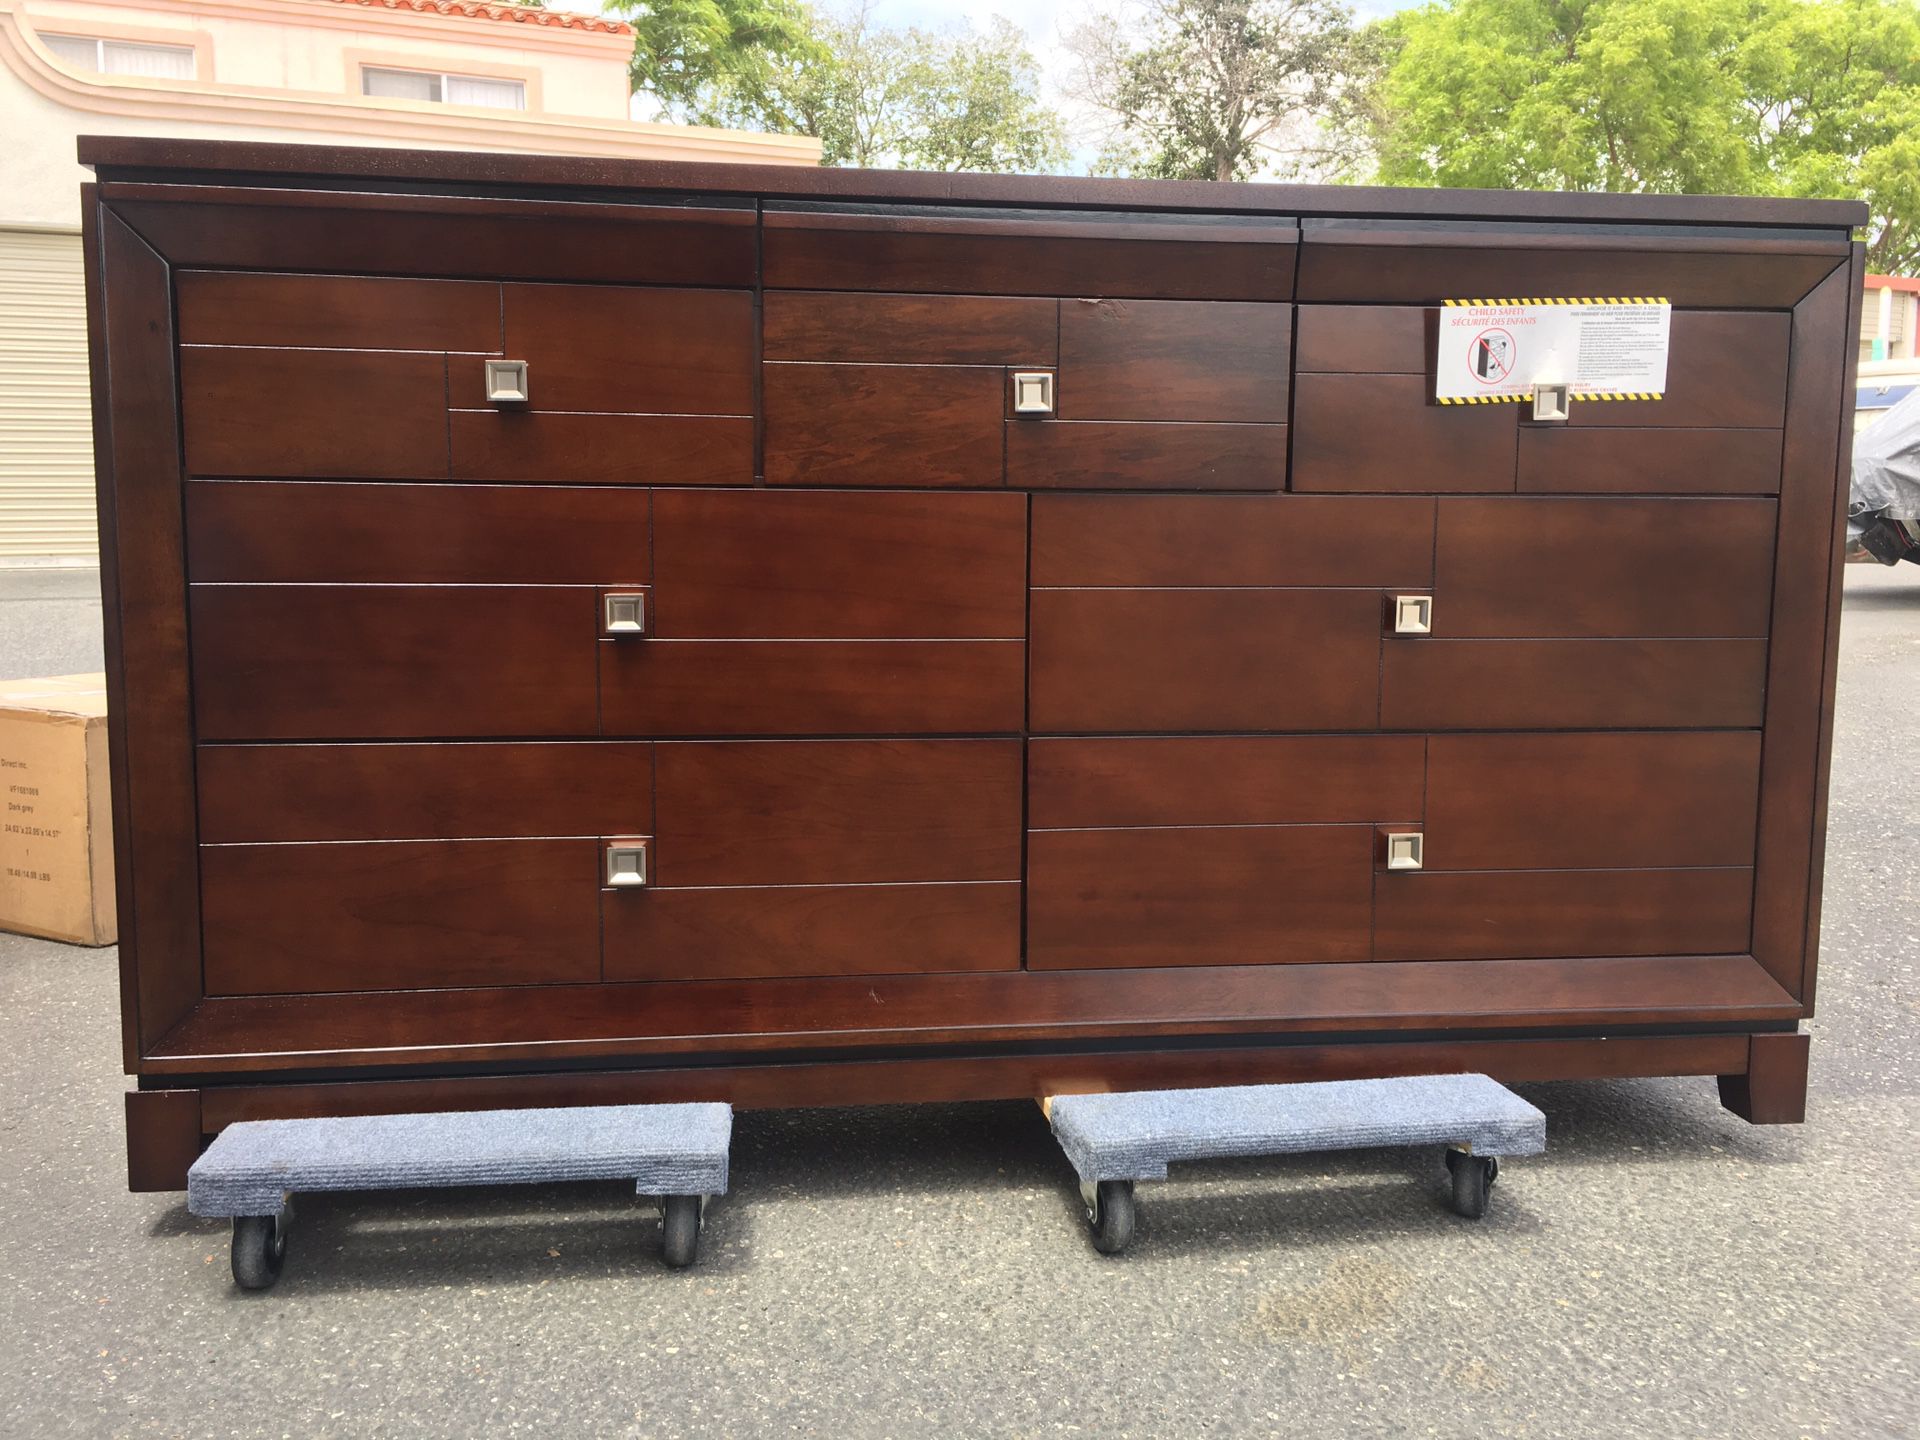 ChuanHeng Furniture Dresser with a hidden drawer